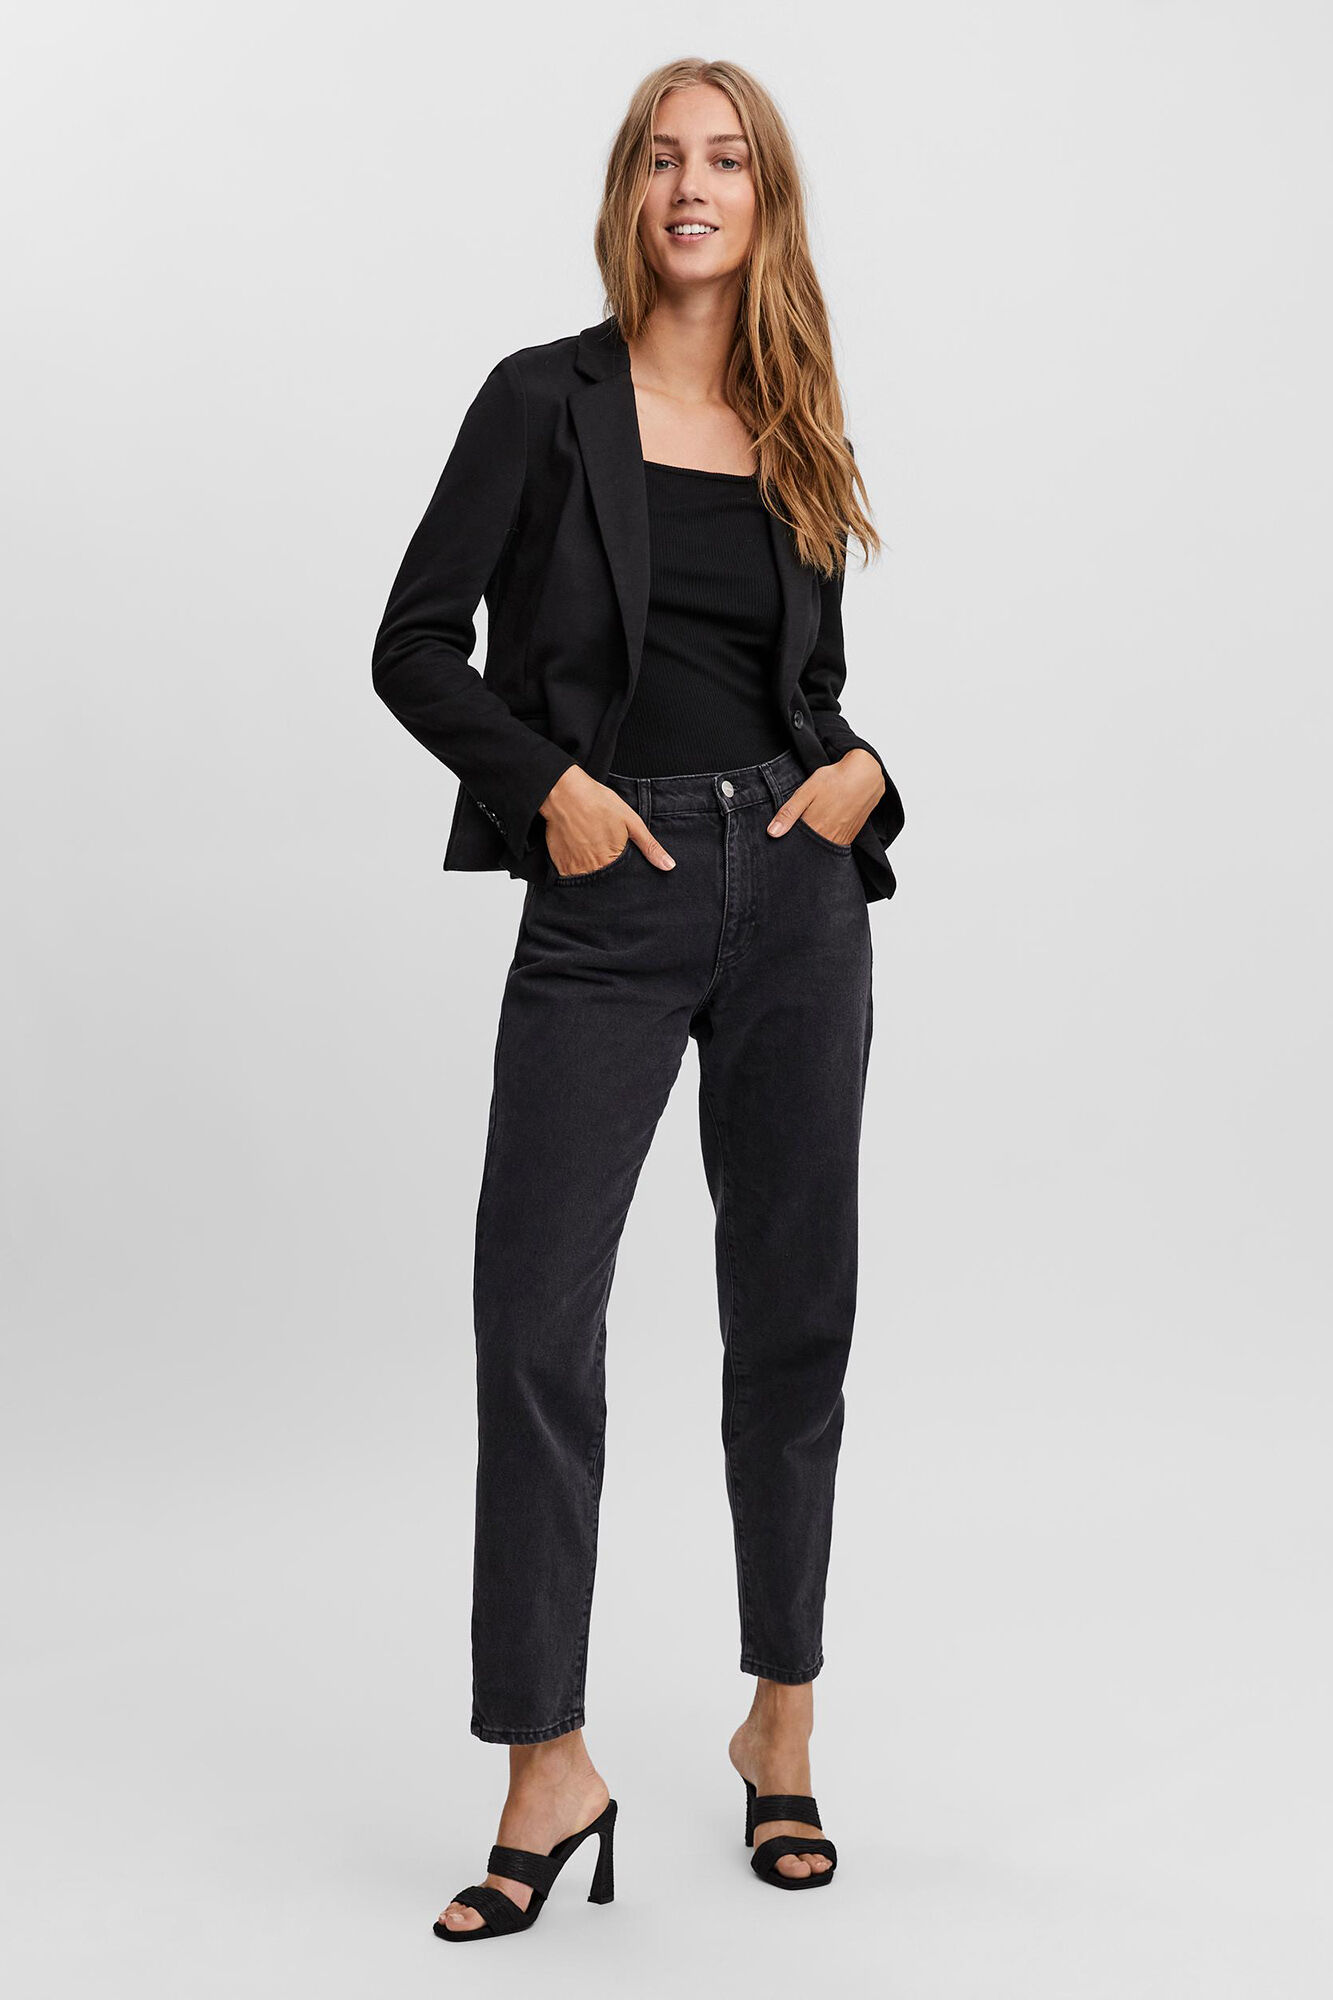 WOMEN FASHION Jackets Blazer Camo discount 75% Black XL Cortefiel blazer 